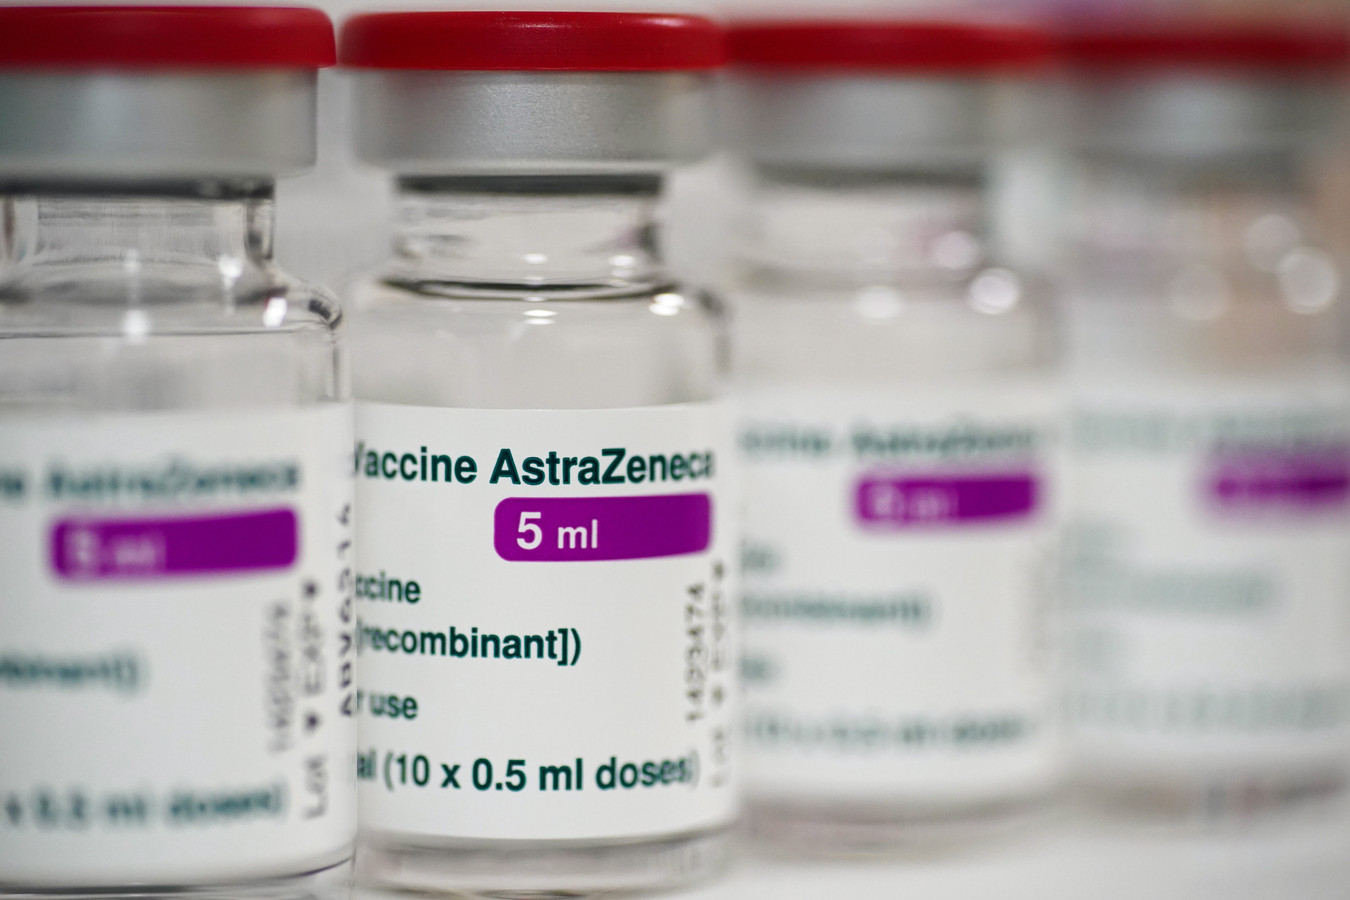 Het bedrijf Halix in Leiden mag de coronavaccins van AstraZeneca gaan produceren voor Nederland en de andere landen in de Europese Unie. De fabriek is vrijdag goedgekeurd door de toezichthouder, het Europees Geneesmiddelenbureau (EMA). De goedkeuring betekent dat er meer vaccindoses beschikbaar komen.